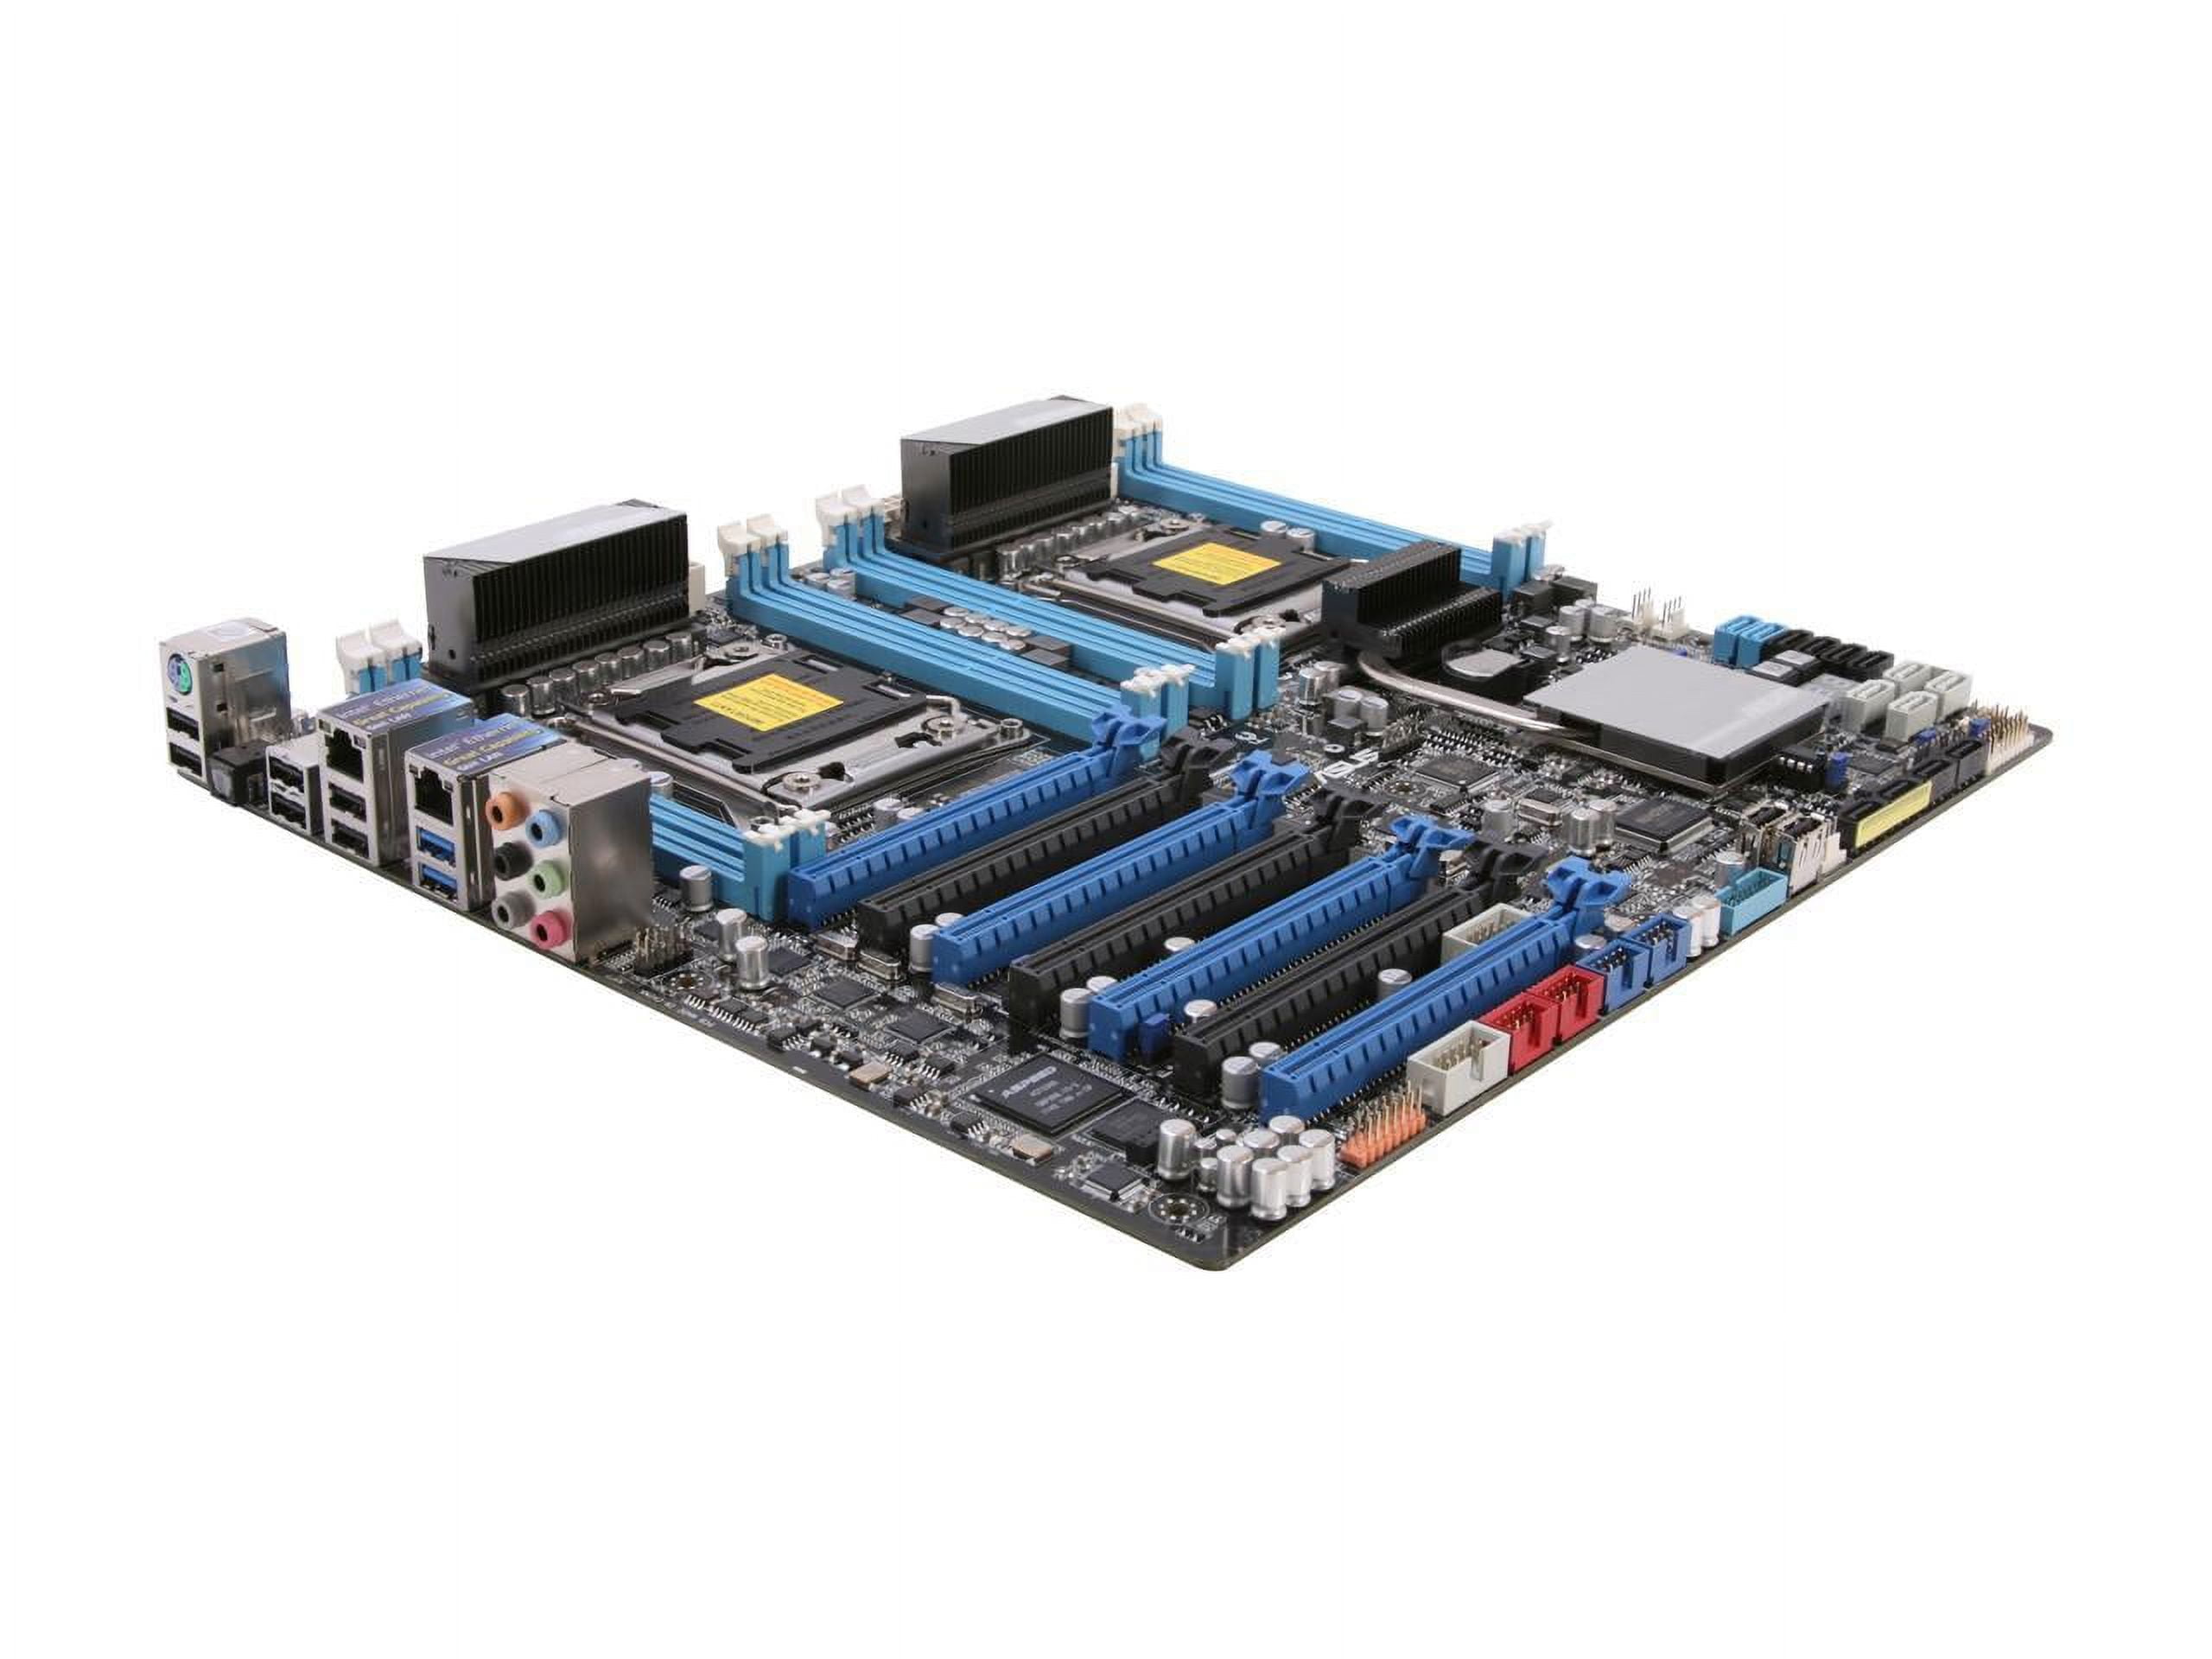 ASUS Z9PE-D8 WS Dual LGA 2011 Intel C602 SATA 6Gb/s USB 3.0 SSI EEB Intel  Motherboard - Walmart.com